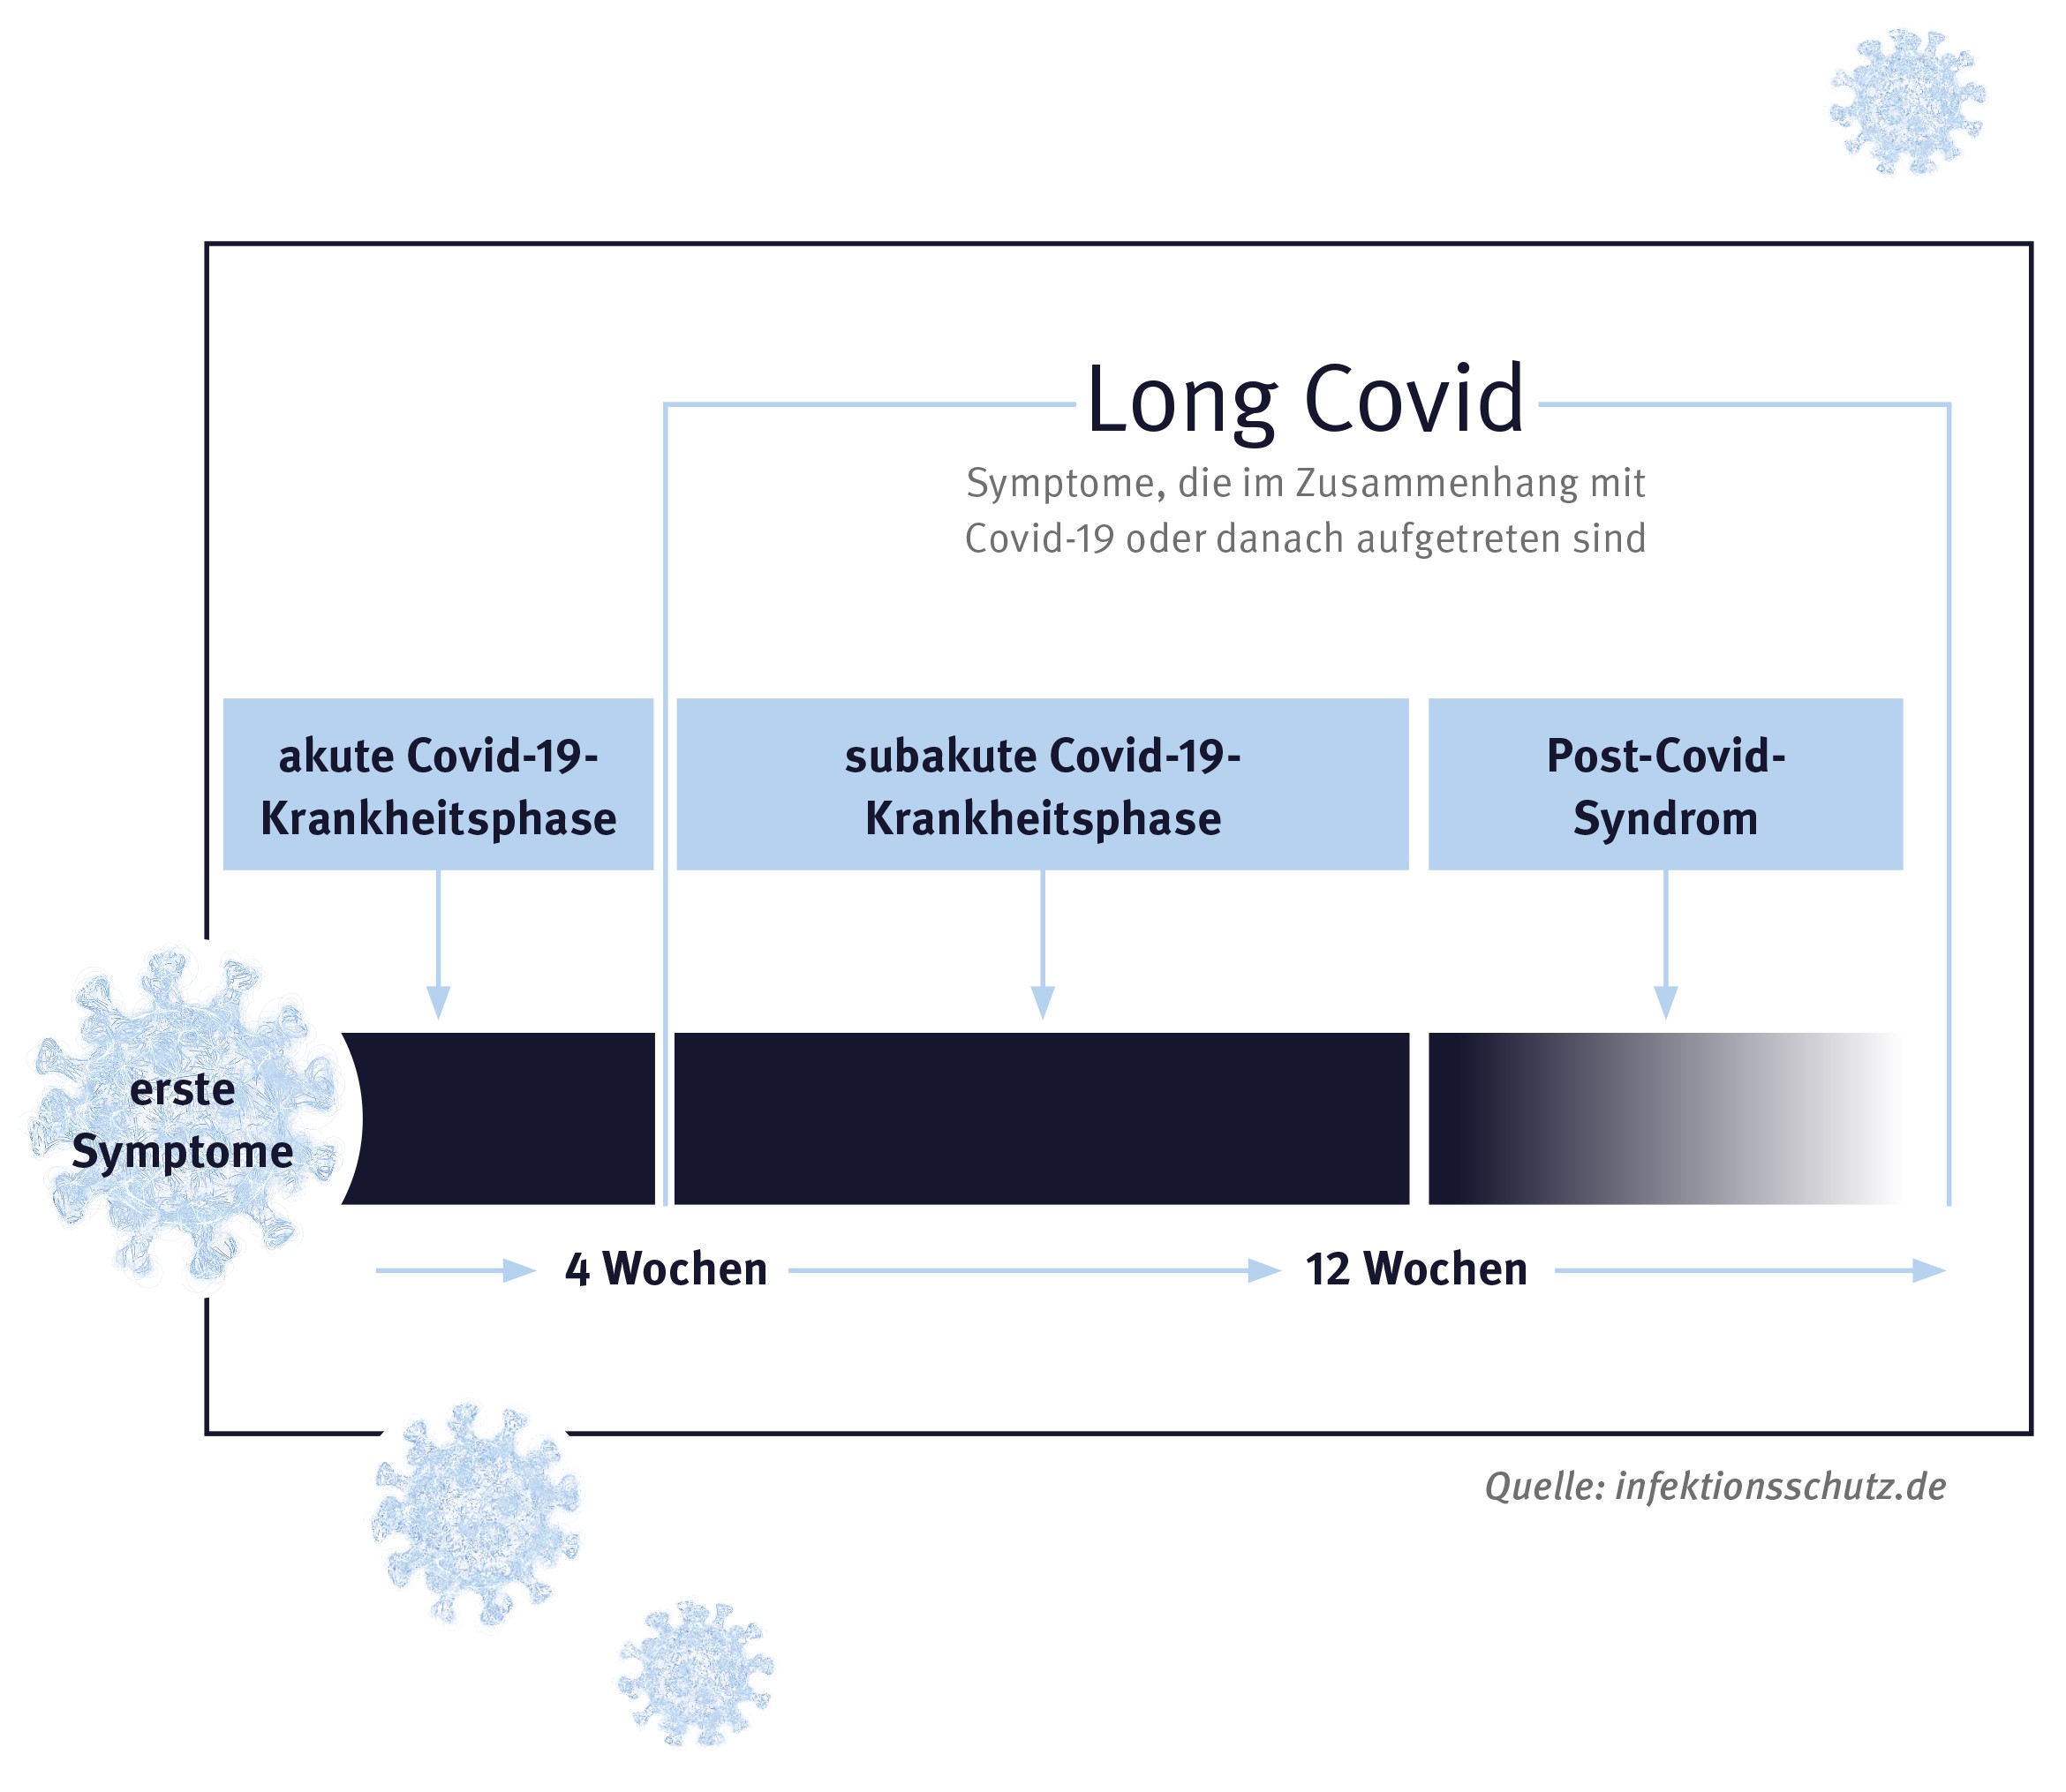 Übersichtsgrafik: An die akute Covid-19-Krankheitsphase (bis 4 Wochen) schließt Long Covid an: Symptome, die im Zusammenhang mit Covid-19 oder danach aufgetreten sind. Darunter verstehen sich zum einen die subakute Covid-19-Krankheitsphase (4-12 Wochen) und zum anderen das Post-Covid-Syndrom (ab 12 Wochen)